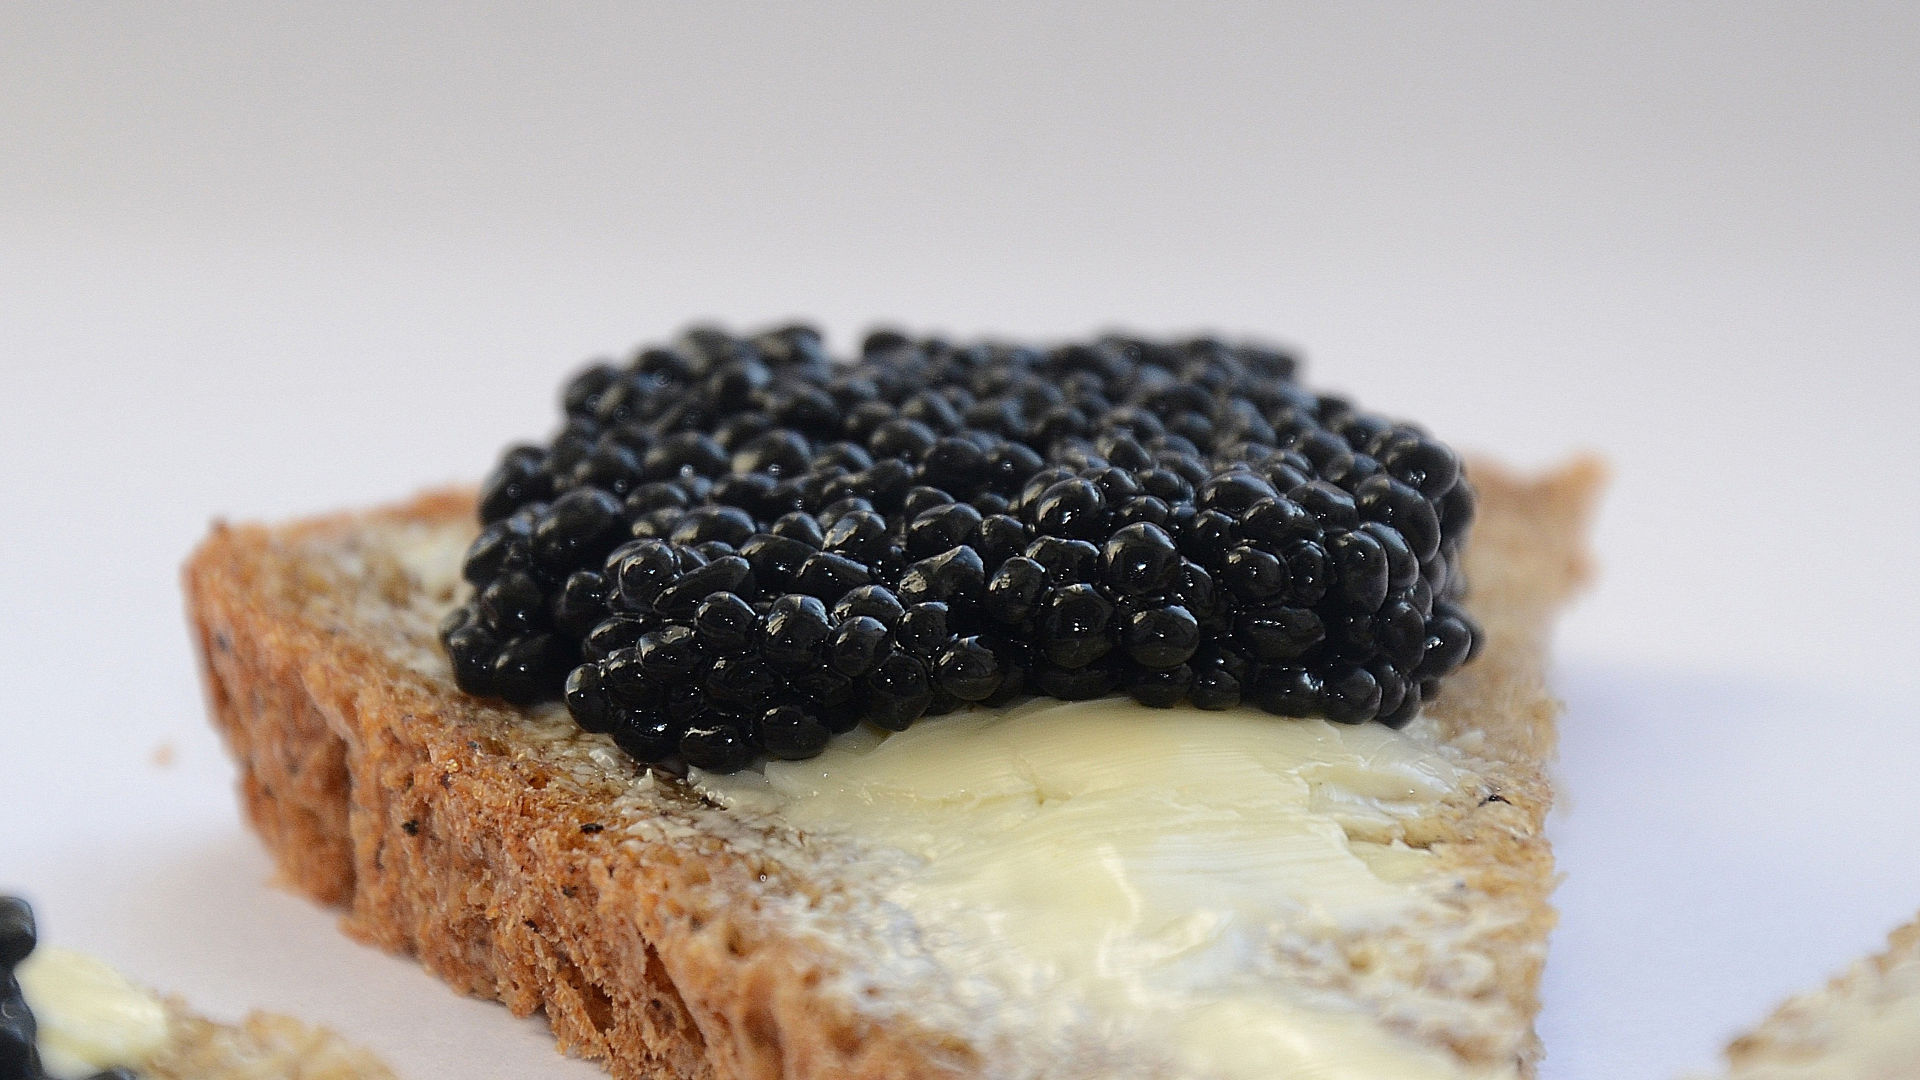 Caviar Français